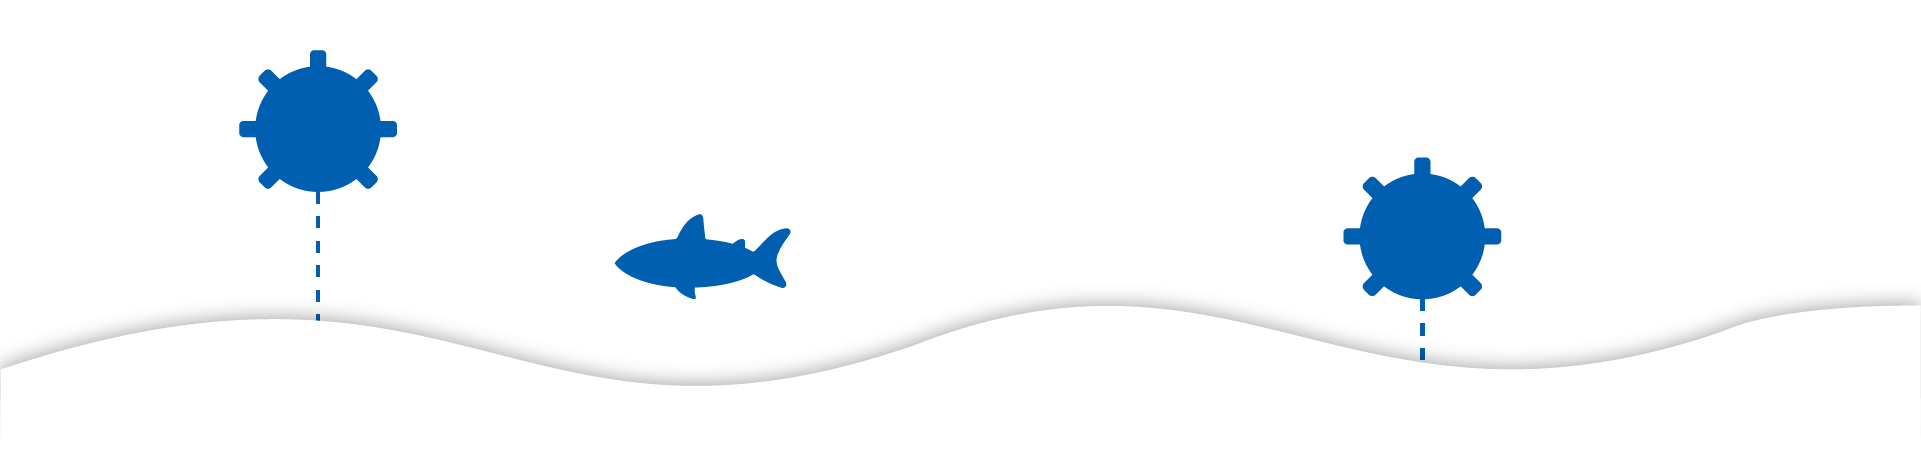 Imagen estilizada azul de un tiburon nadando en el fondo marino